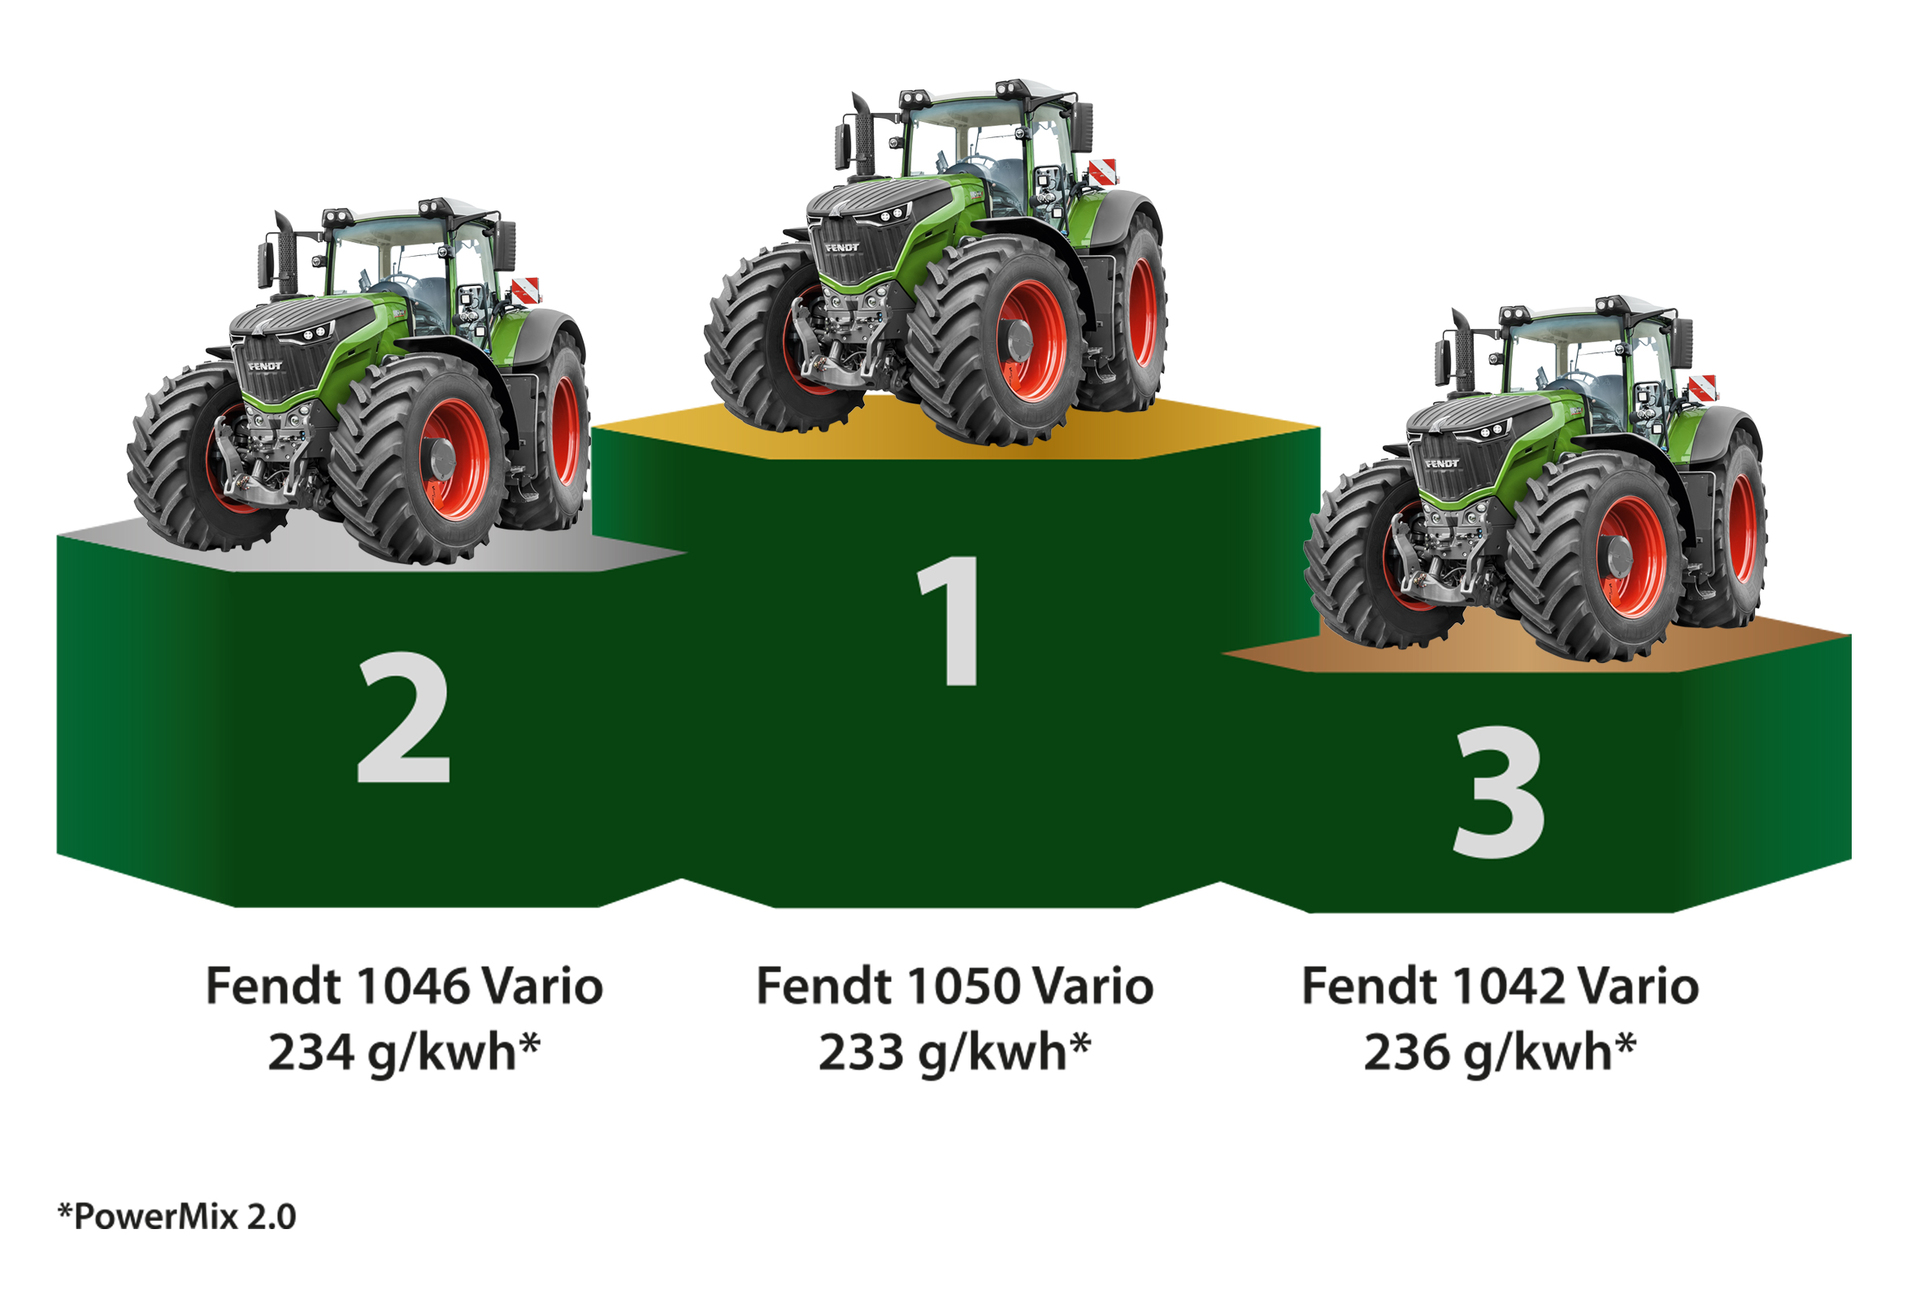 Три модели тракторов FENDT 1000й серии (1050, 1042 и 1046) прошли независимое тестирование экспертами Немецкого сельскохозяйственного общества (DLG)